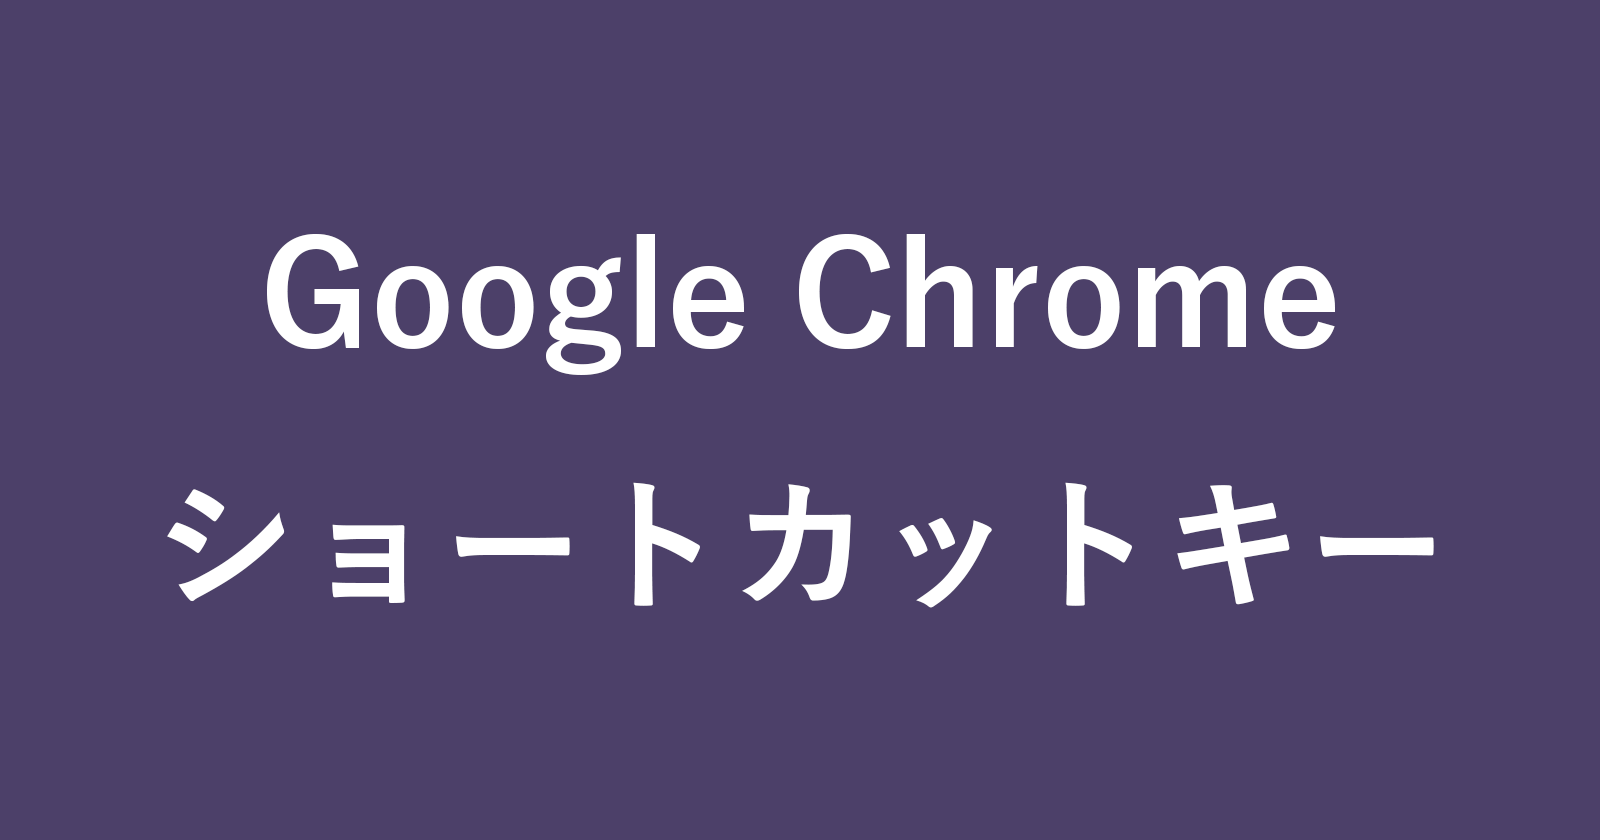 Google Chrome ショートカットキーの一覧表 まとめ Pc設定のカルマ